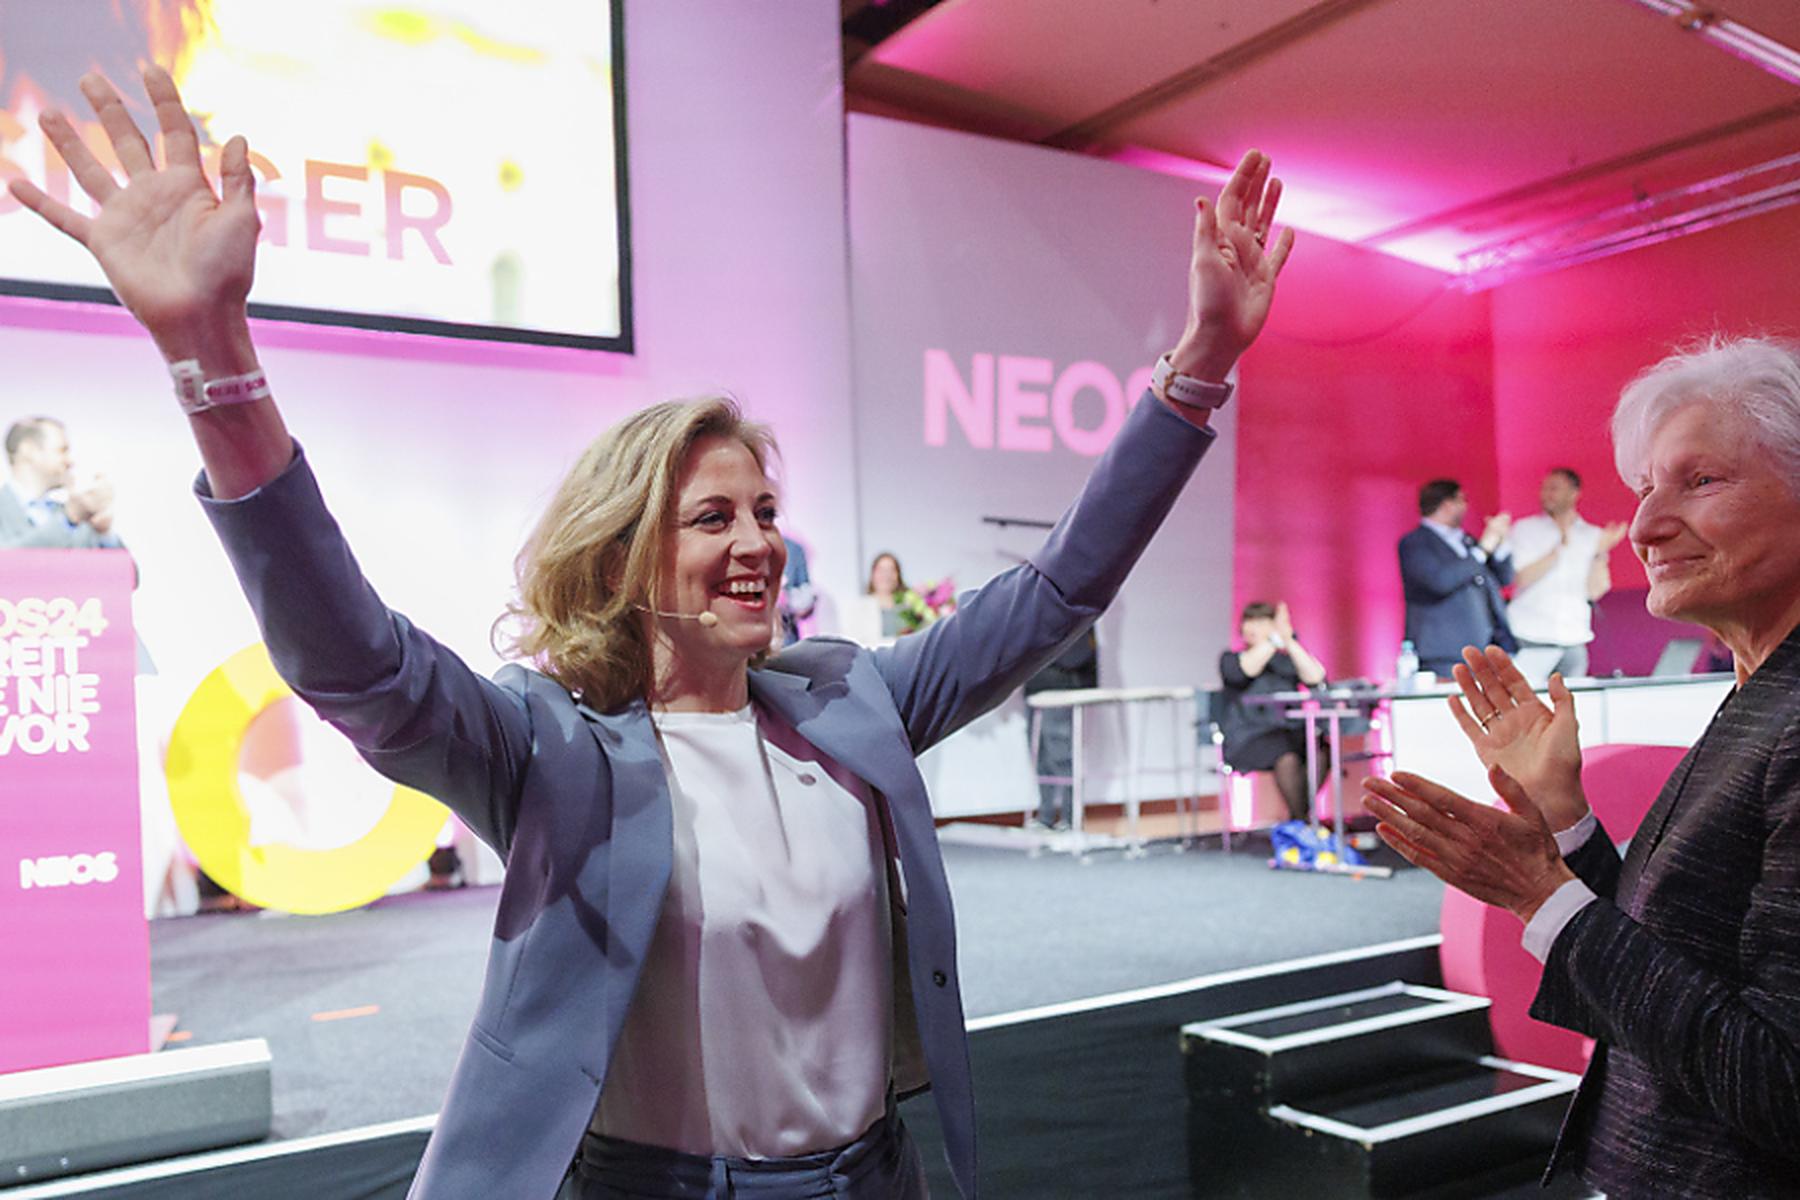 Wien/Graz: Meinl-Reisinger zur NEOS-Spitzenkandidatin gekürt